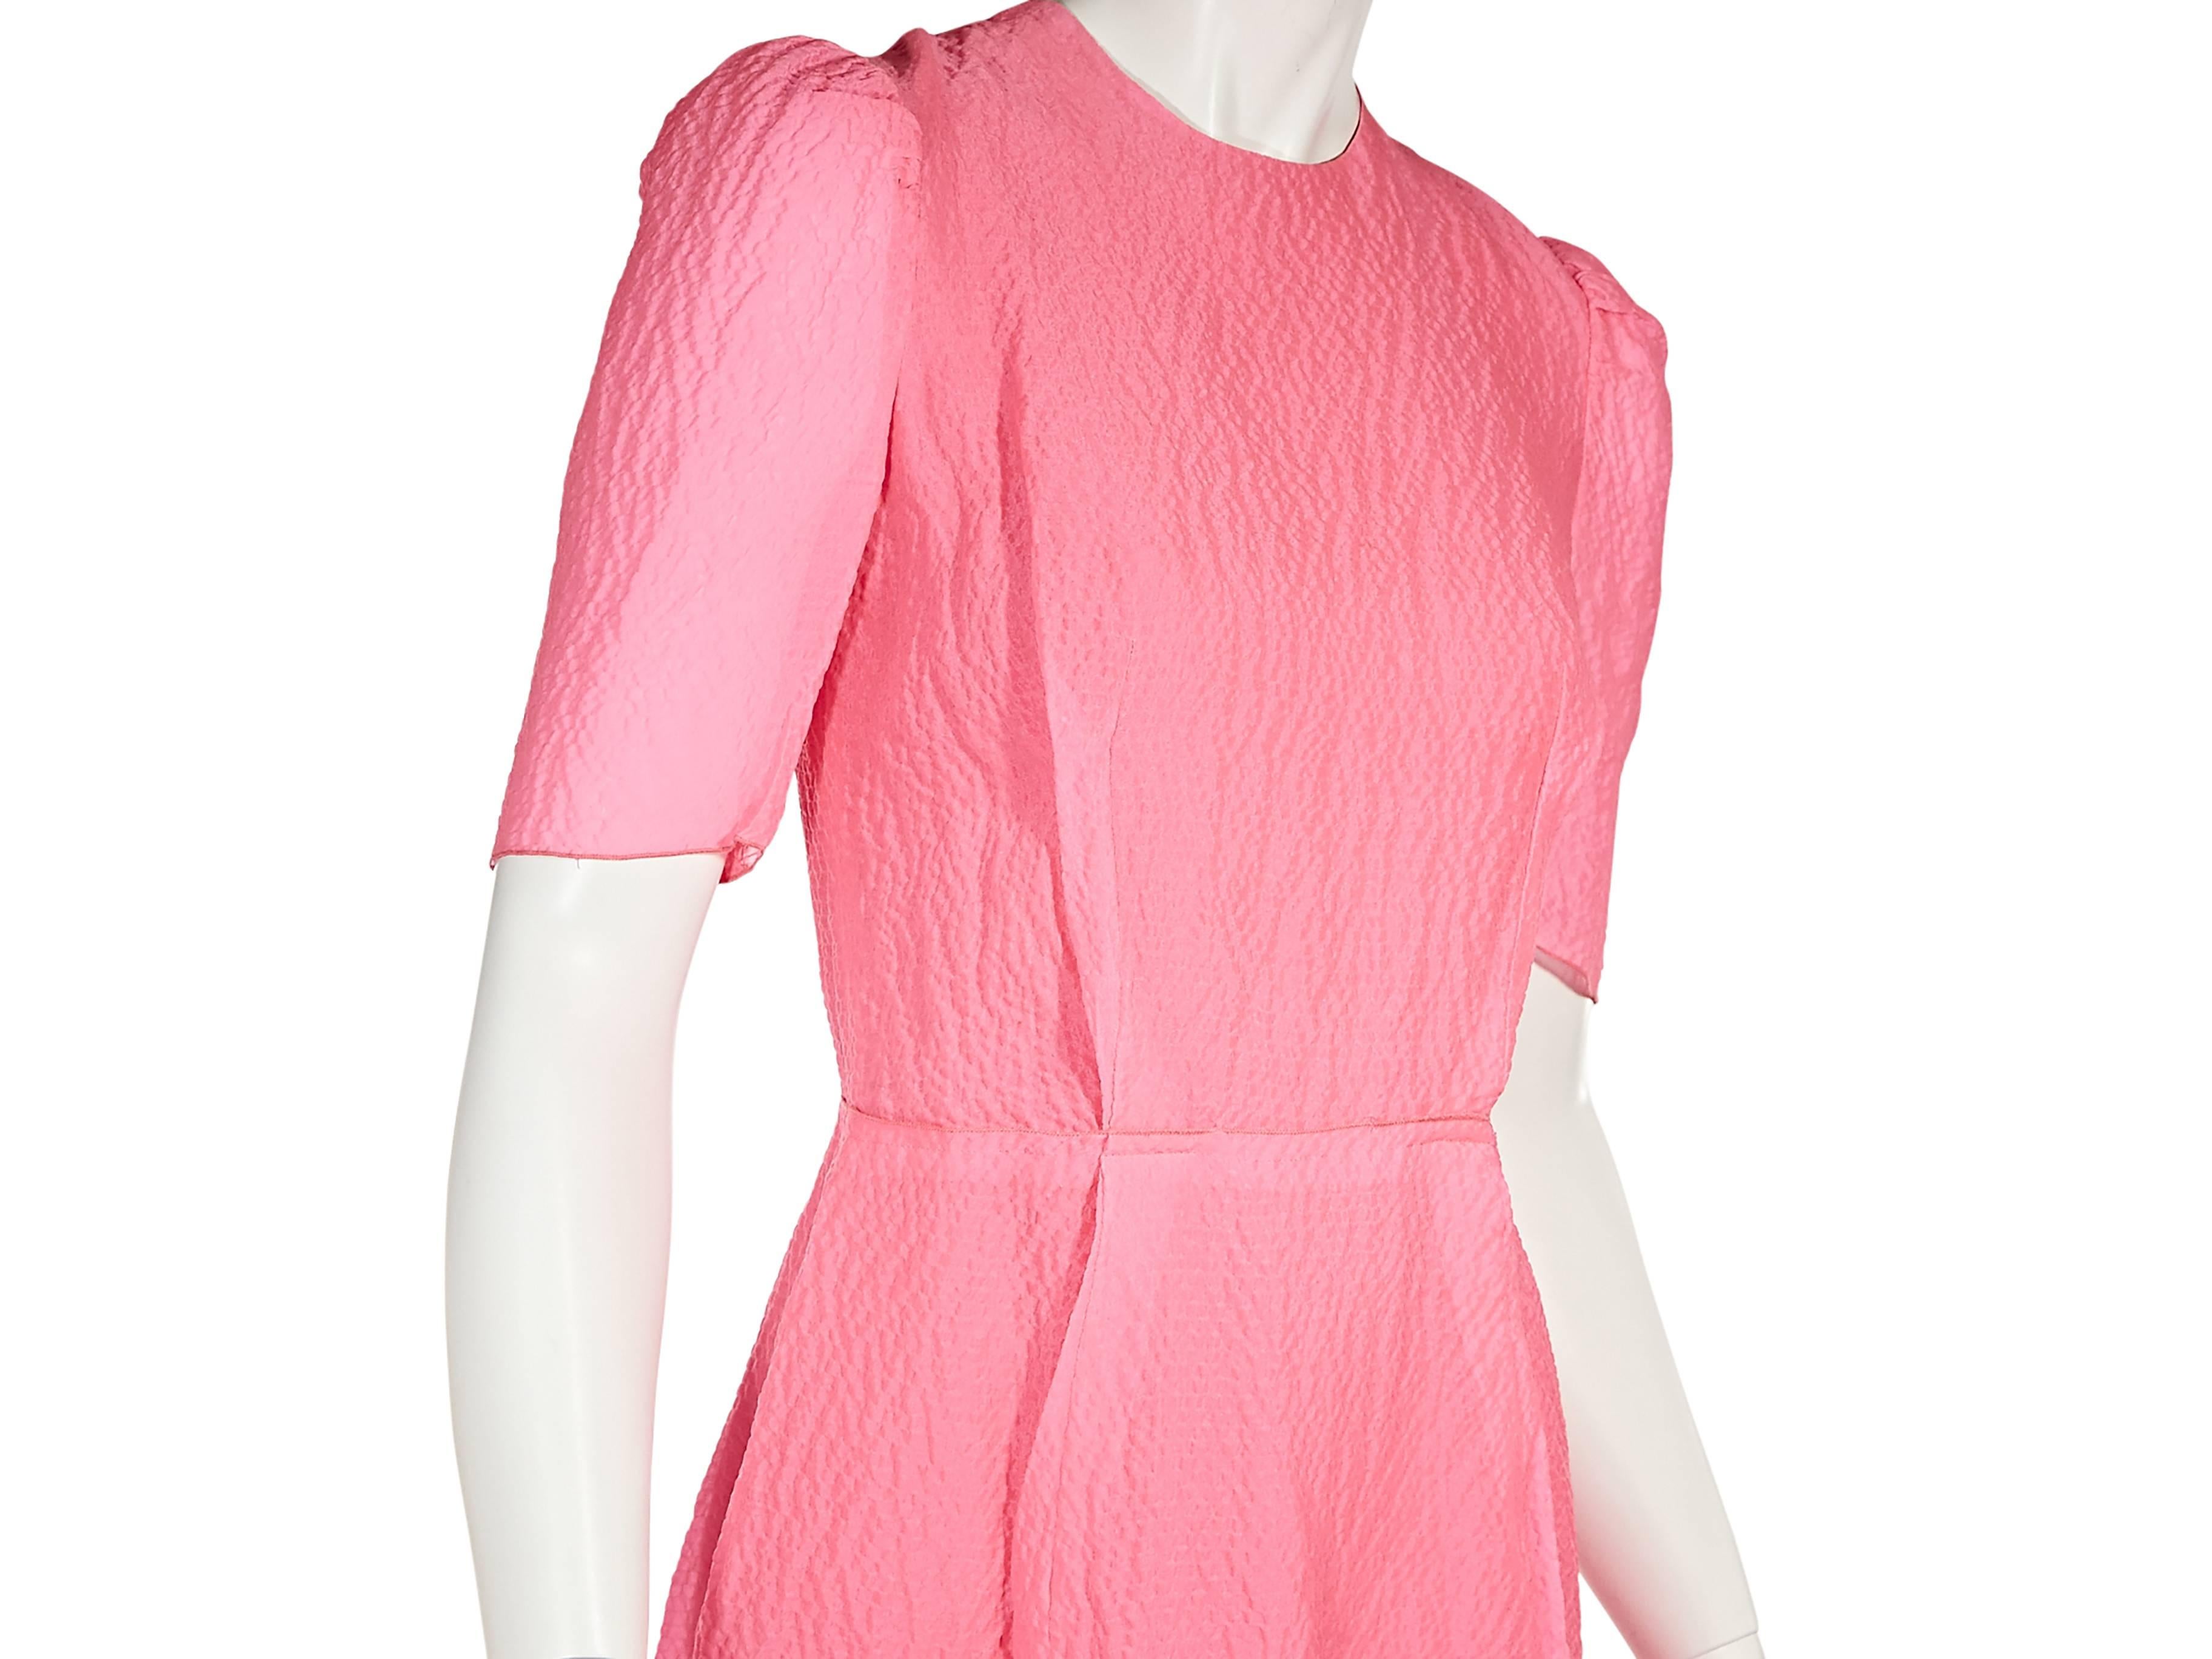 Women's Hot Pink Lanvin Textured Sheath Dress